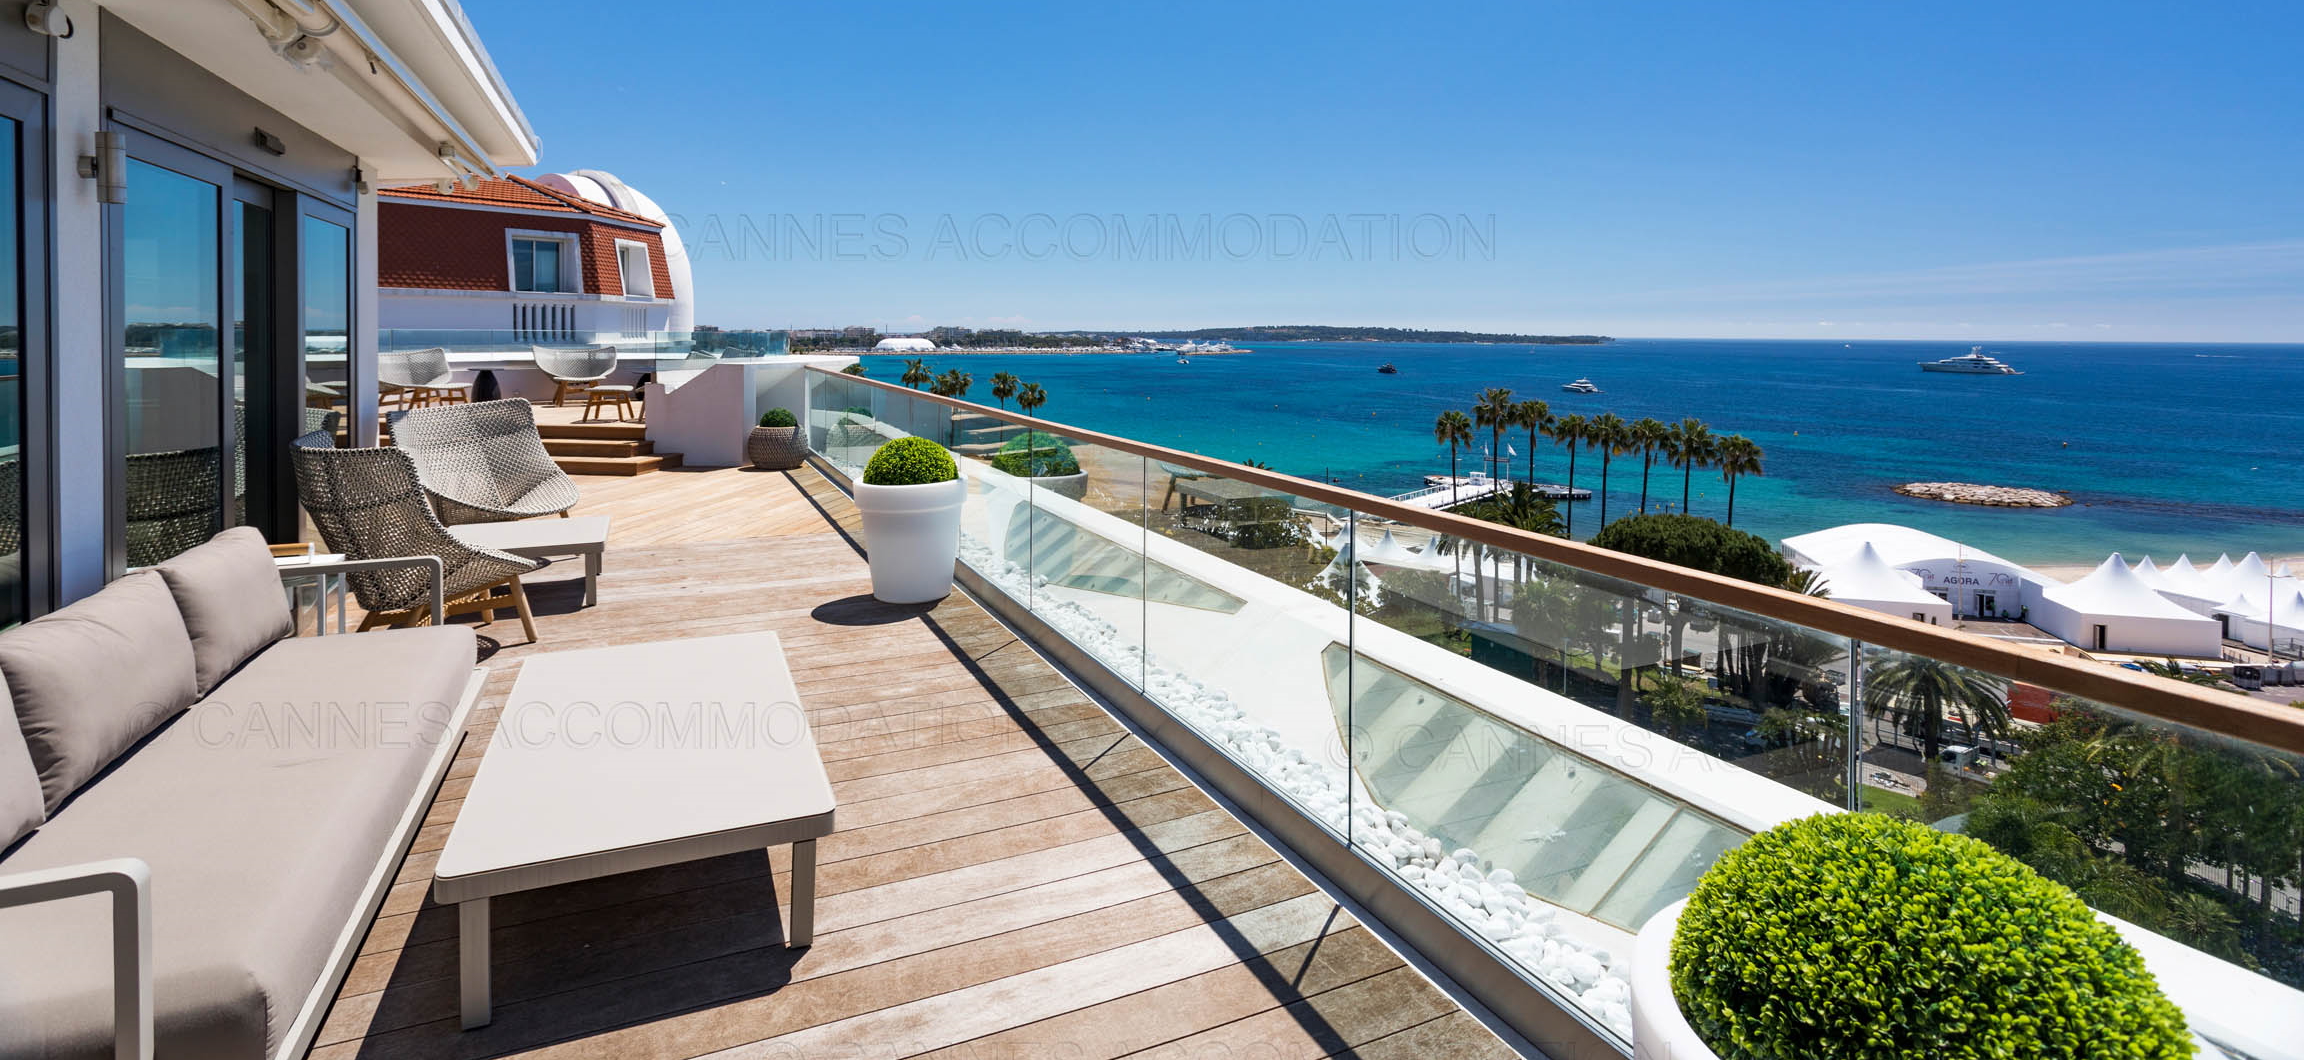 Cannes Accommodations 4 appartements Croisette luxe face au Palais des Festivals